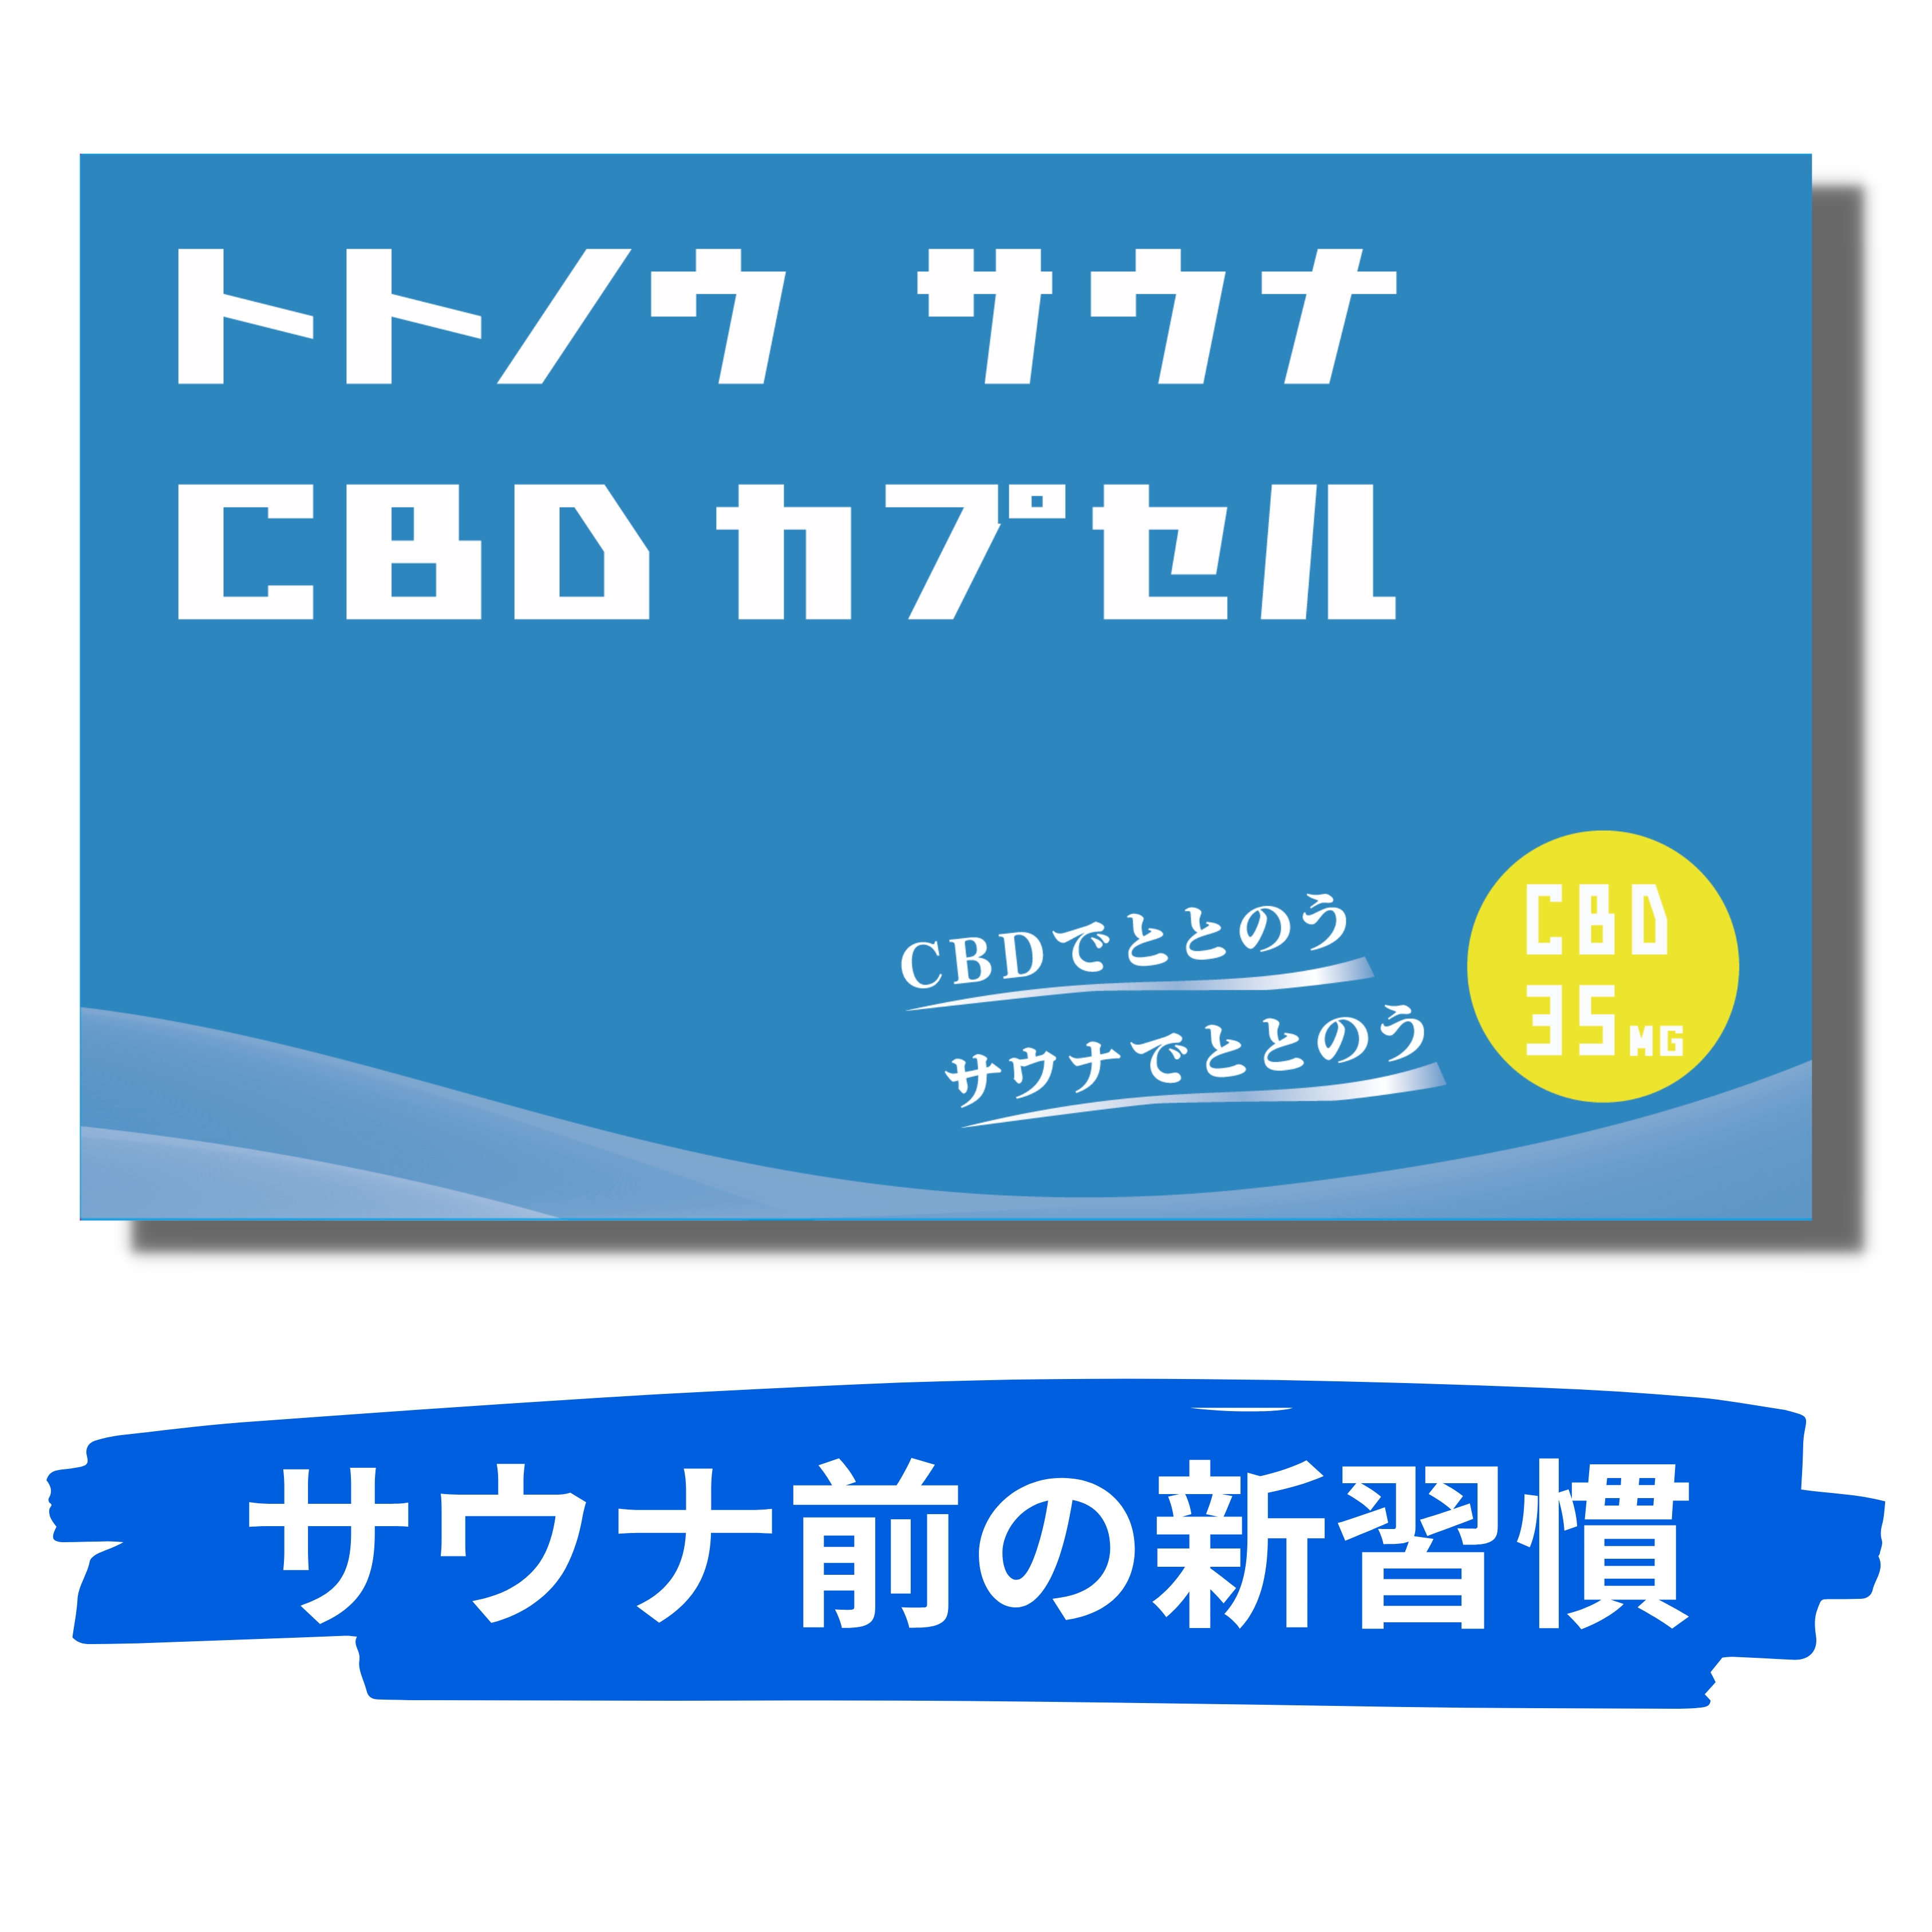 新発売 well being トトノウ サウナ CBD ととのいサプリ 高濃度CBD カプセル 日本製 1粒35mg CBD350mg ビタミンD オーガニックMCT CBDオイル sauna 10回分